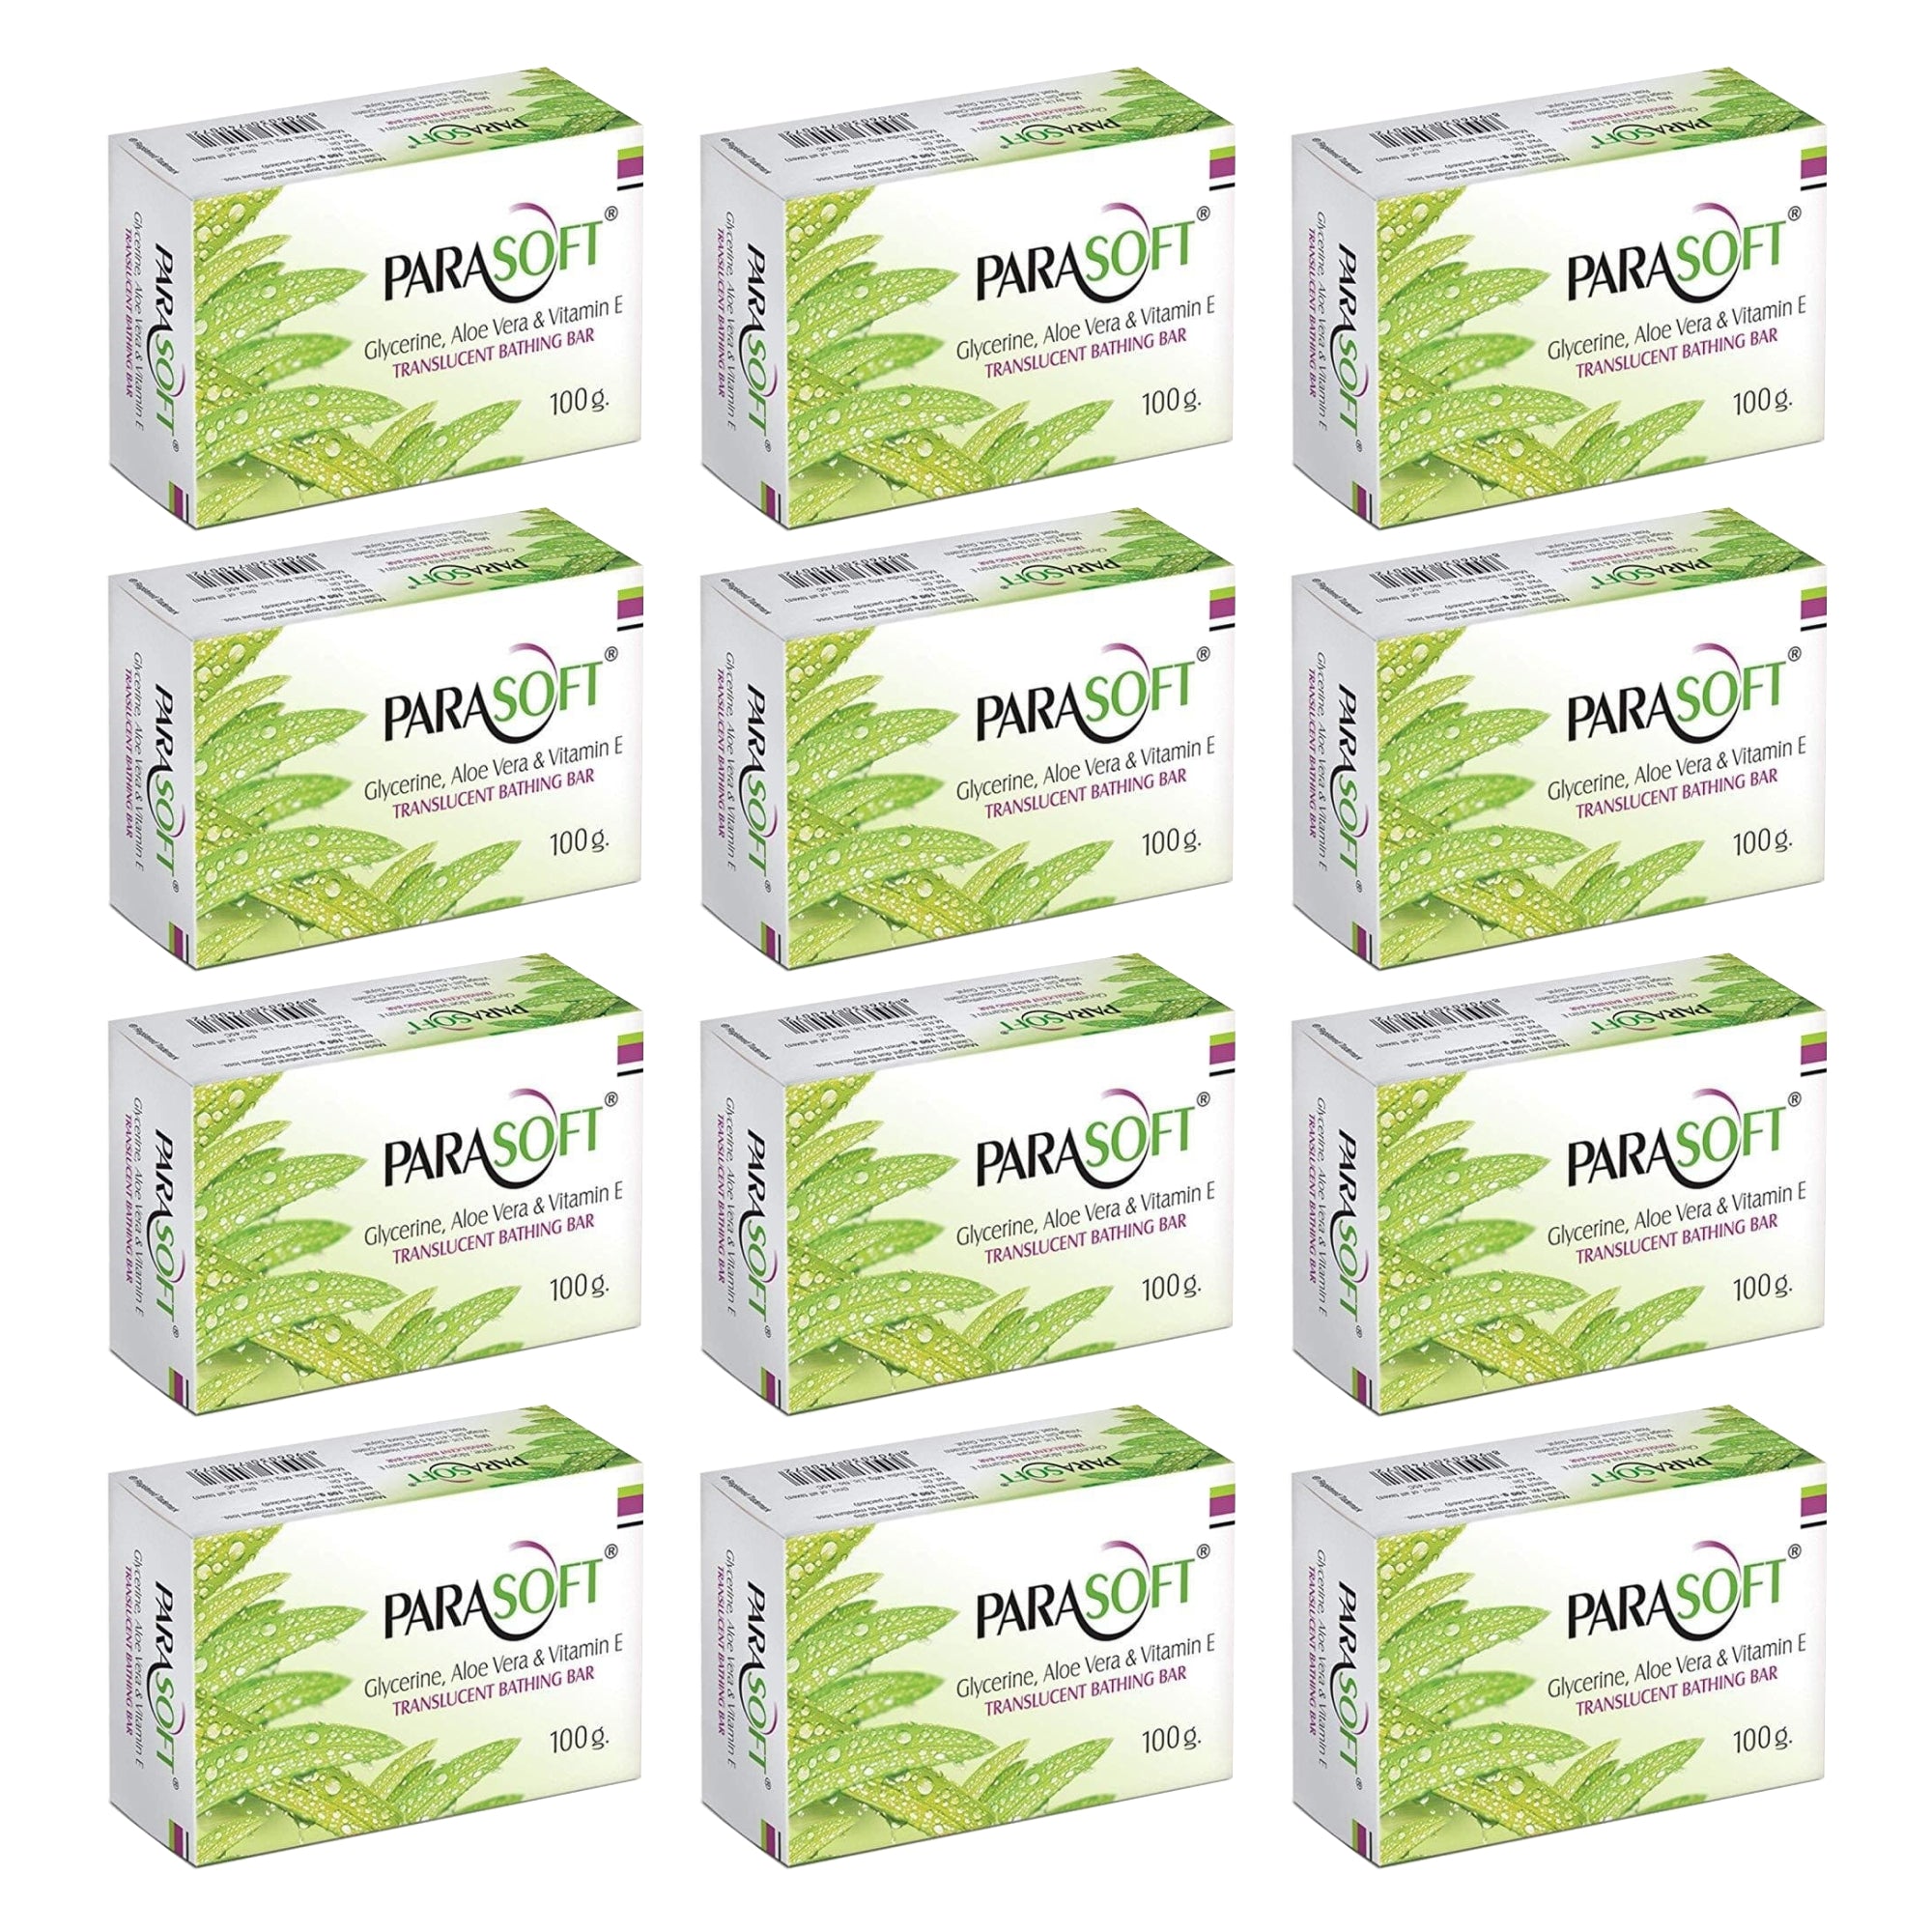 Shoprythm Dry,Parasoft Pack of 12 Salve Parasoft Soap 100g